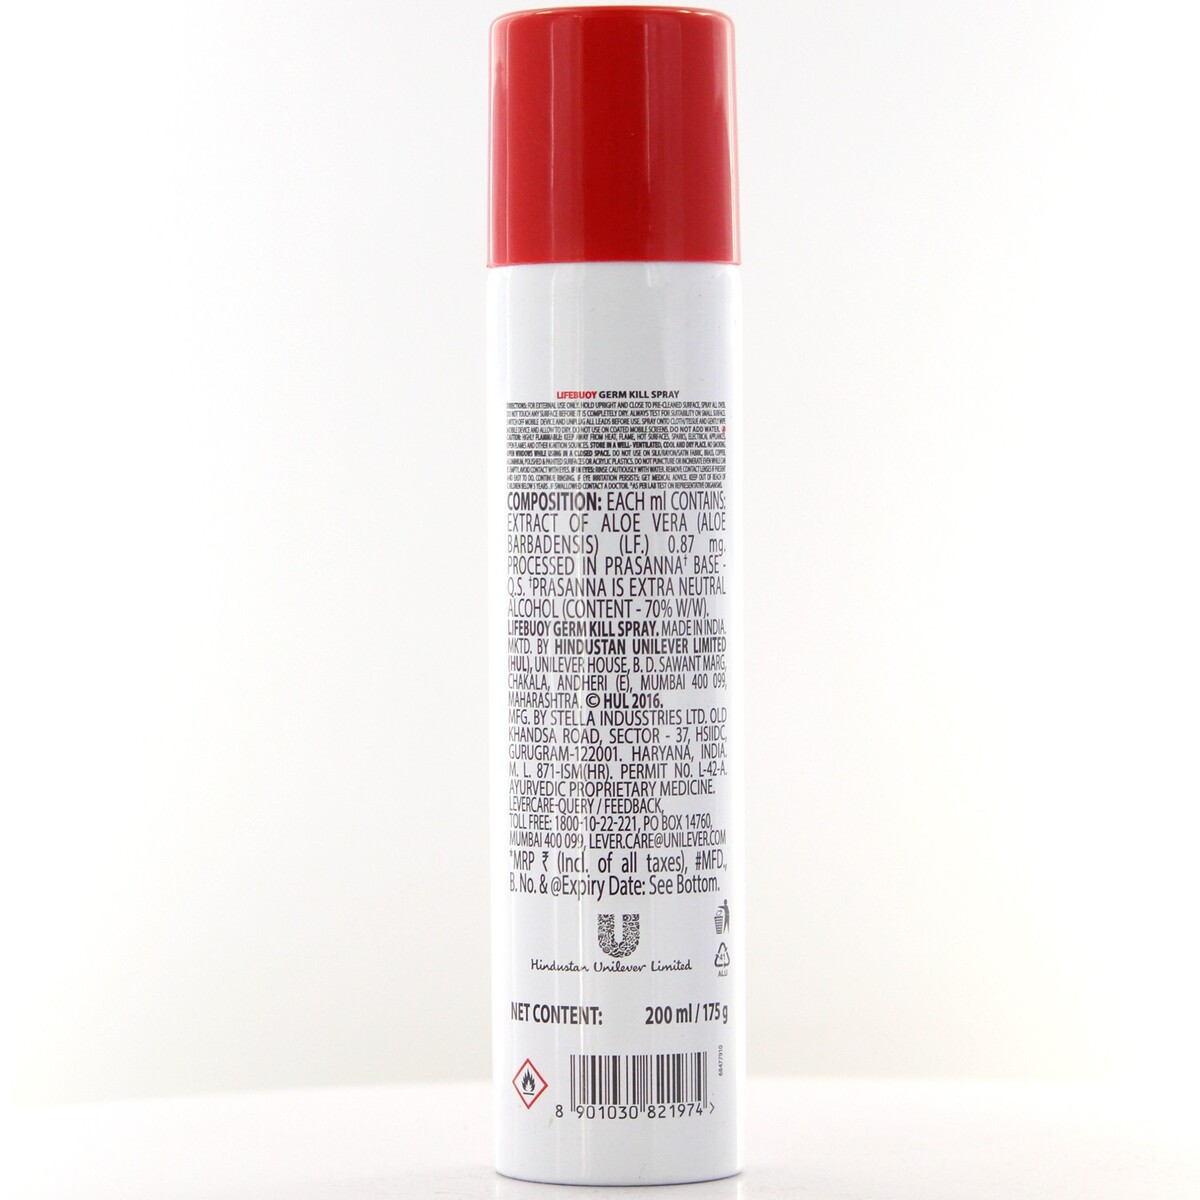 Lifebuoy Germ Kill Spray 200ml